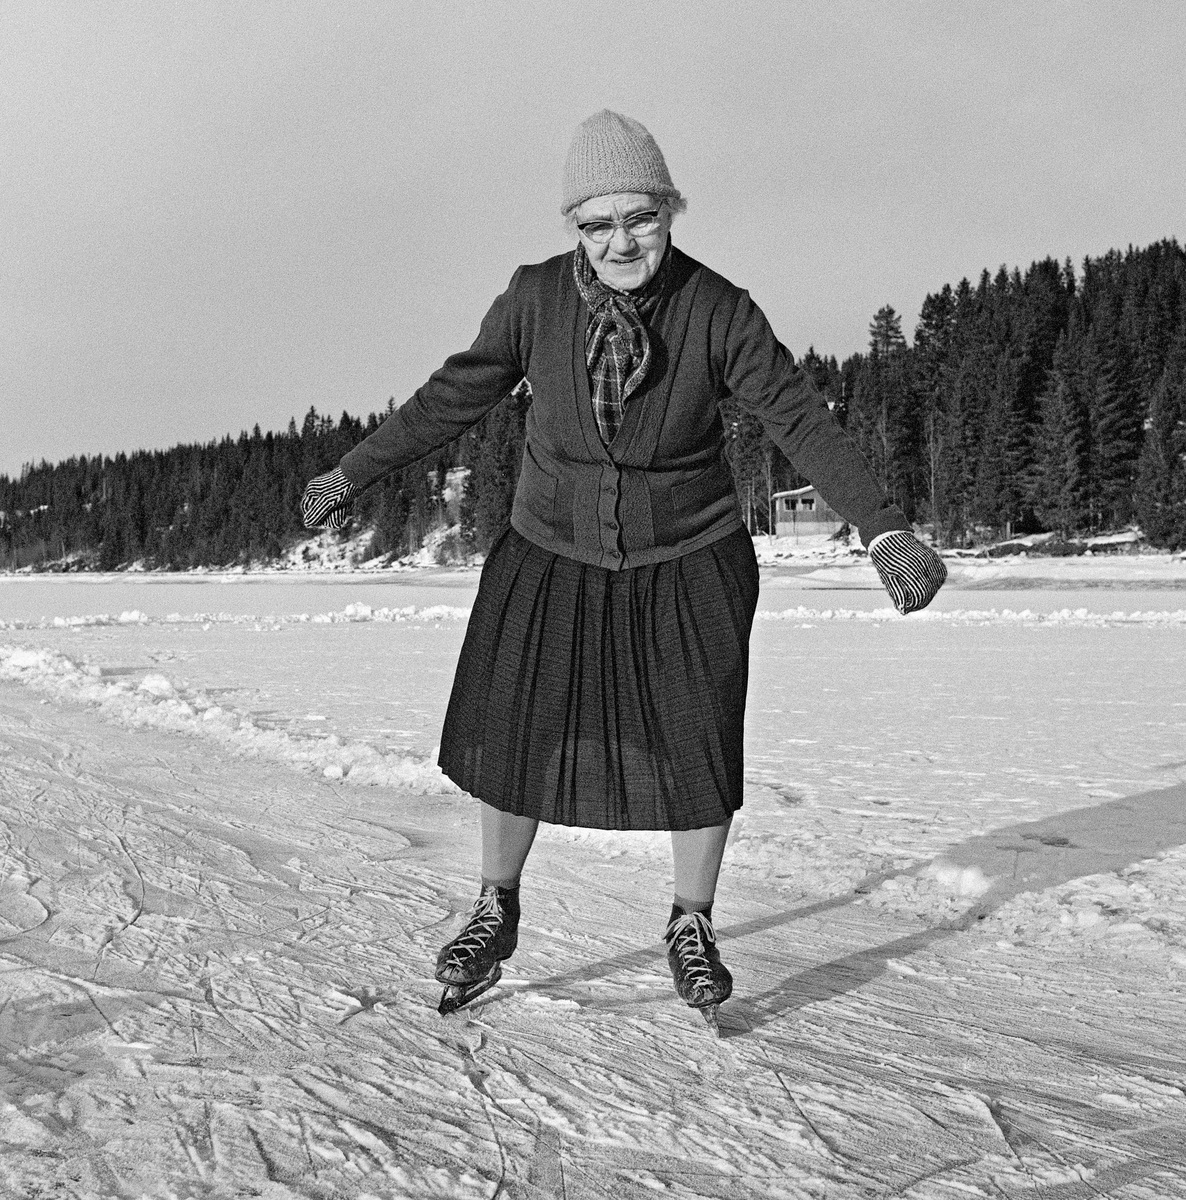 Da 84-årige Karoline Nergaard (1884-1980) fra Søre Osen i Trysil kommune, fotografert med skøyter på beina på Osensjøen vinteren 1964.  Karoline var ellers kledd i et mørkt skjørt med ei tynn ulljakke på overkroppen, skjerf i halsen, ullvotter på hendene og lue på hodet.  TKaroline tilhørte en generasjon som hadde brukt skøytene som framkomtmiddel på sjøen vinterstid, og hun likte å holde seg i form også i en alder der få andre, spesielt kvinner, gikk på skøyter.  Denne aktiviteten vakte en del oppmerksomhet i lokalpressen, noe som resulterte i at Karoline 18. februar 1964 ble hovedperson i en fjernsynsreportasje der også eliteløperen Per Ivar Moe var med.

Noe mer informasjon om Karoline Nergaard og hennes skøyeinteresse finnes under fanen «Opplysninger».